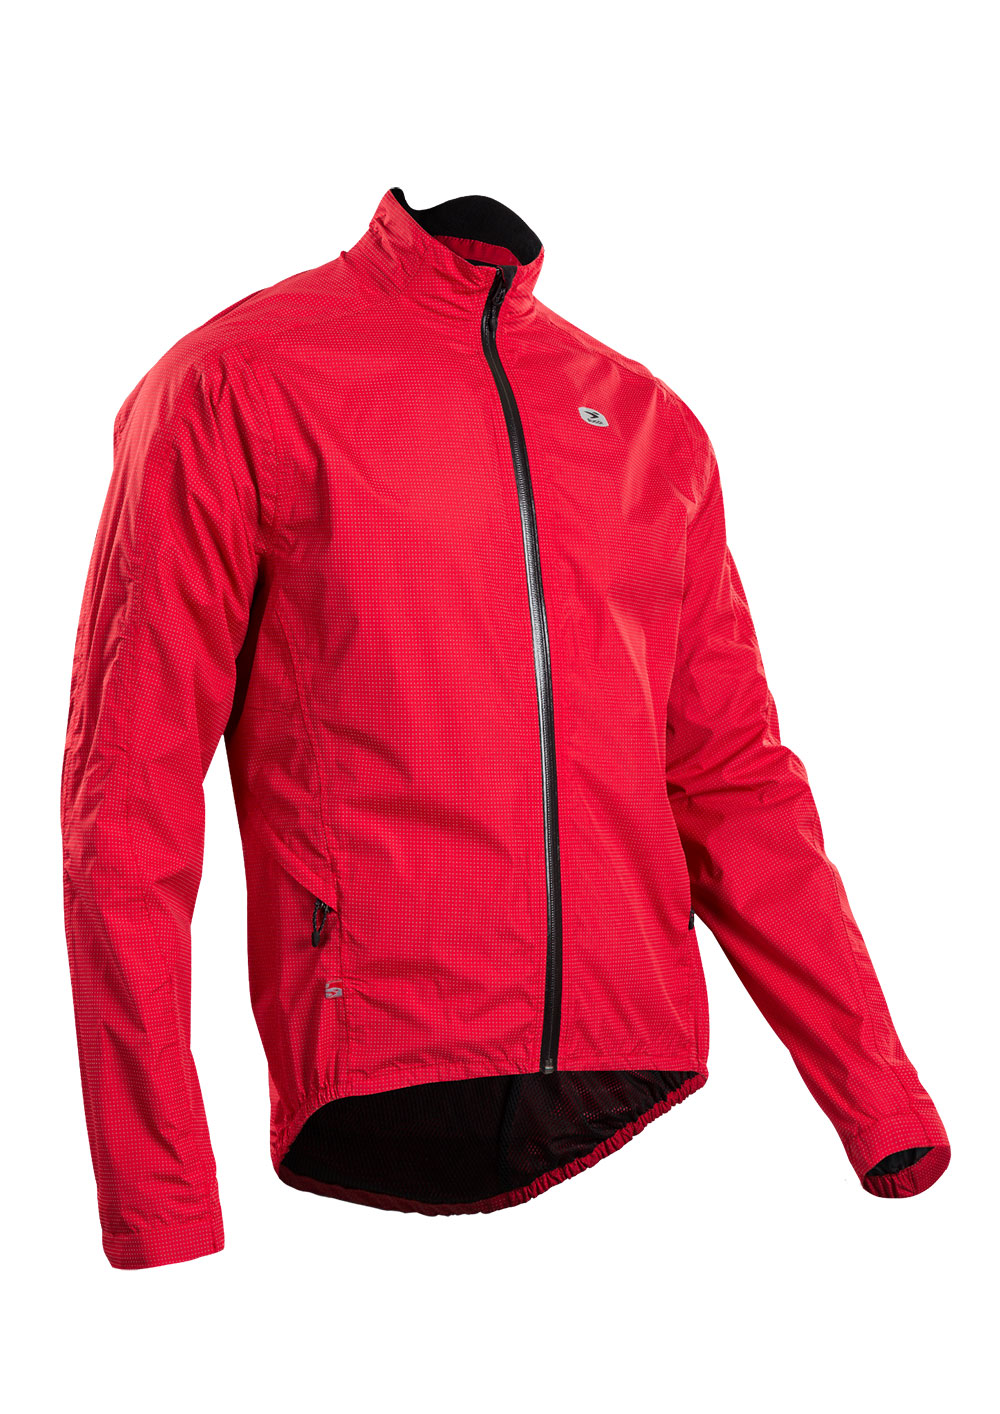 Куртка Sugoi ZAP BIKE, светоотражающая ткань, мужская, CHI (красная), S фото 